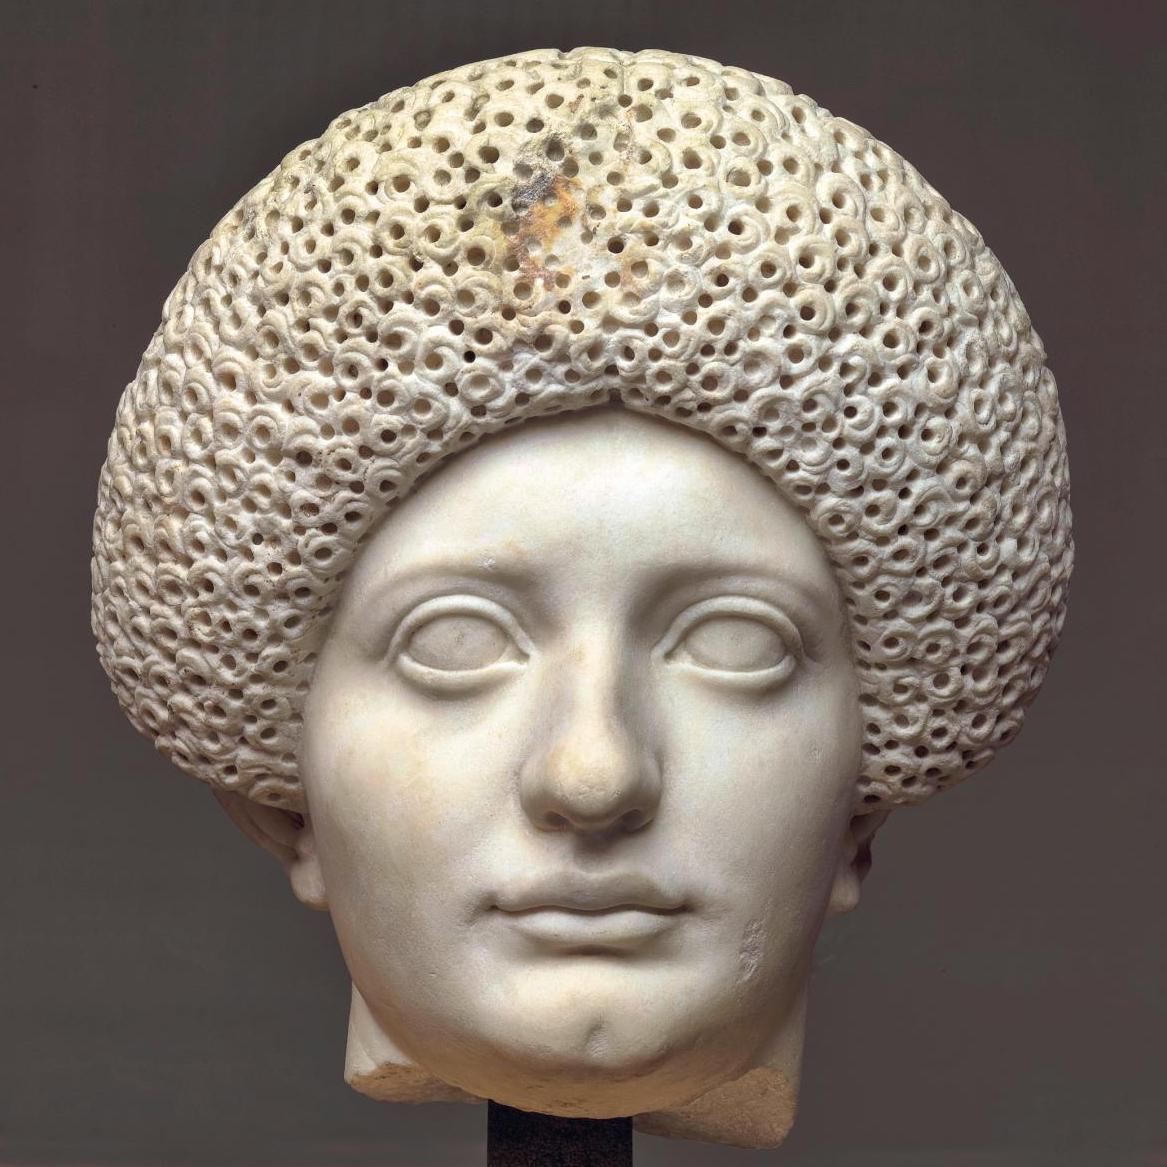 D’Alésia à Rome, l’aventure archéologique de Napoléon III au musée d’Archéologie nationale - Expositions